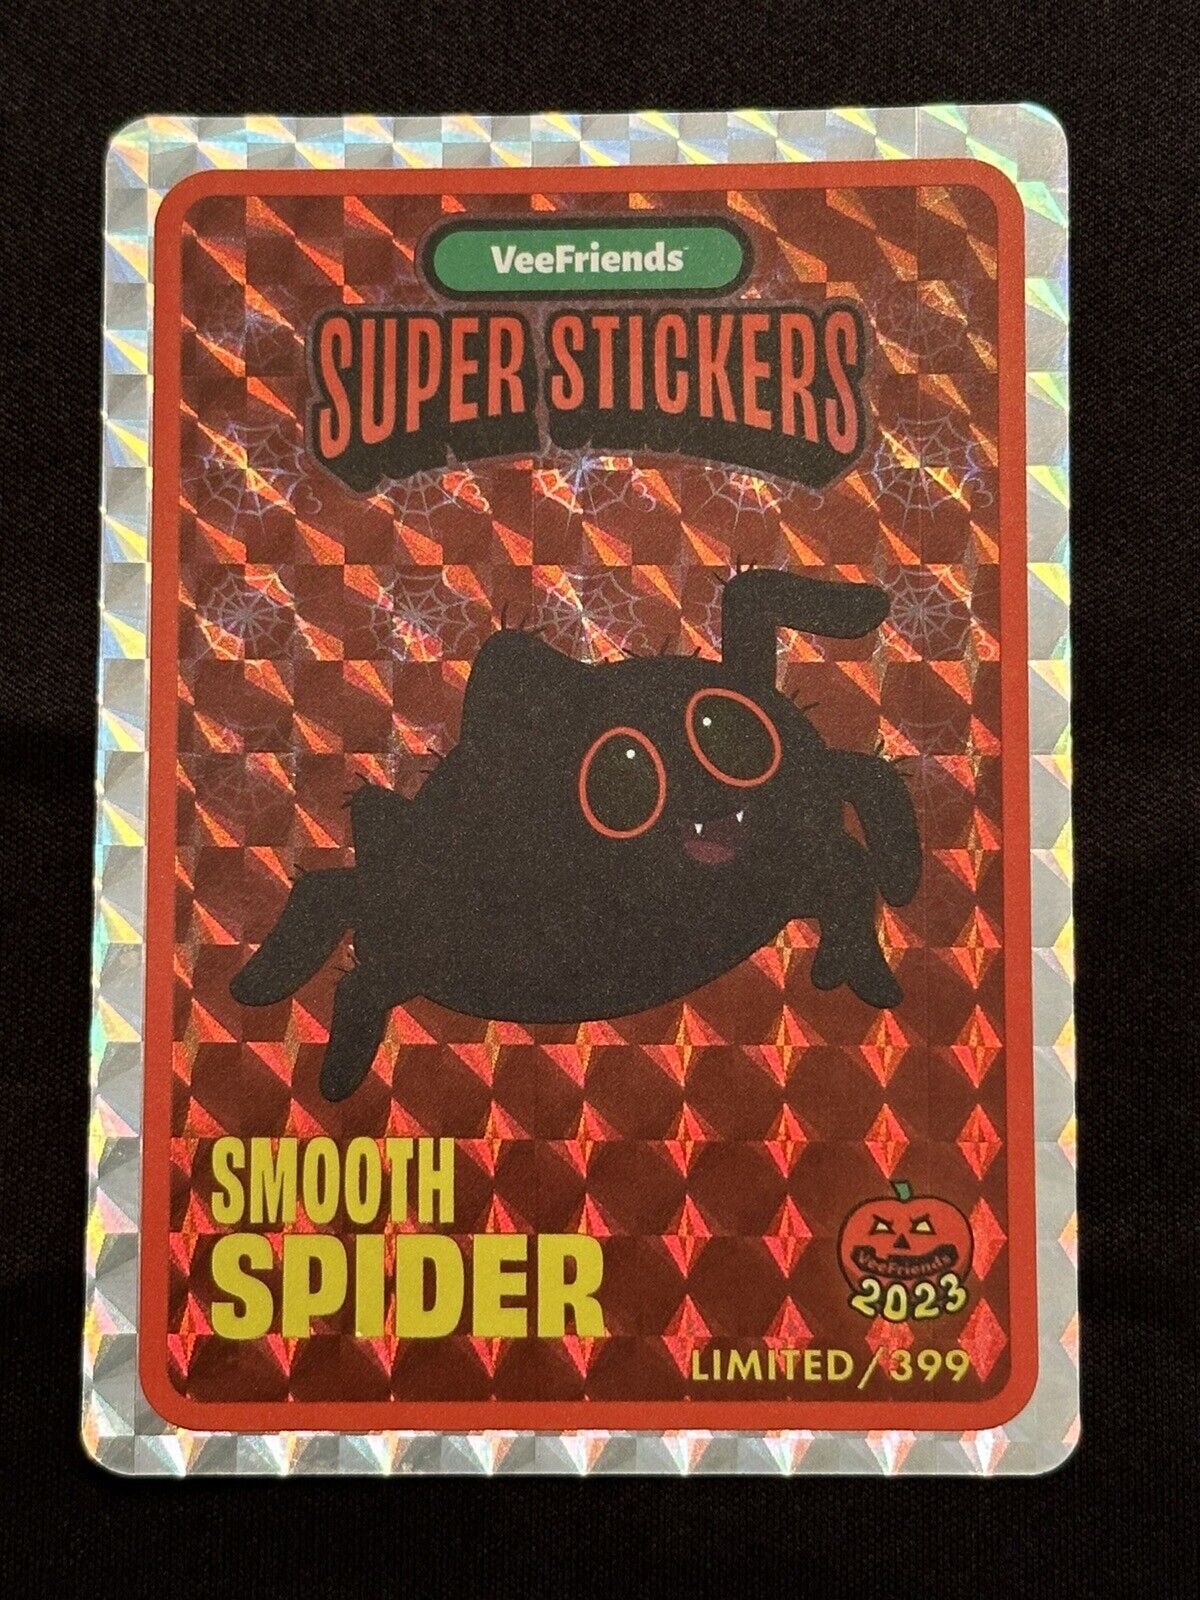 SMOOTH SPIDER Super Sticker /399 - Veefriends Halloween 2023 Collection